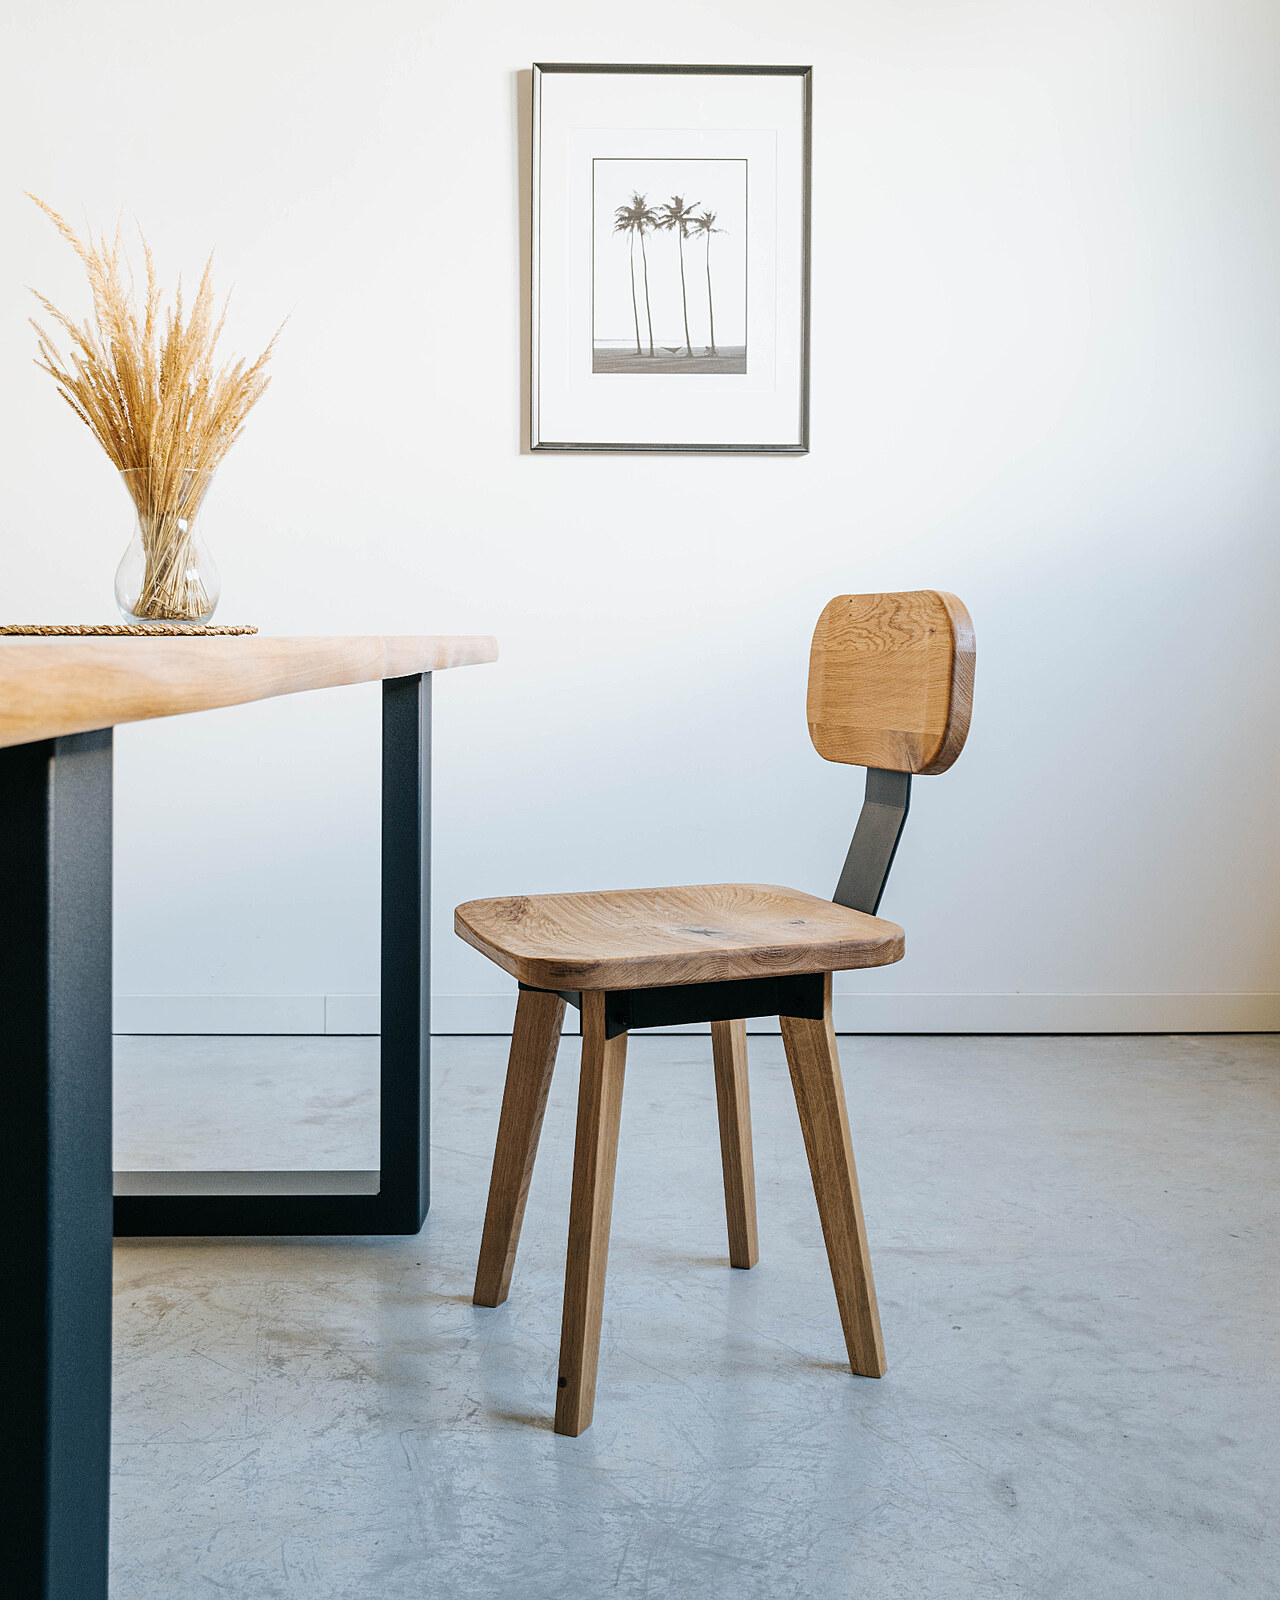 Než jsem vyrobil kvalitní židli, mnohokrát jsem z ní spadl, říká designér  nábytku Václav Herka | Design | Lidovky.cz